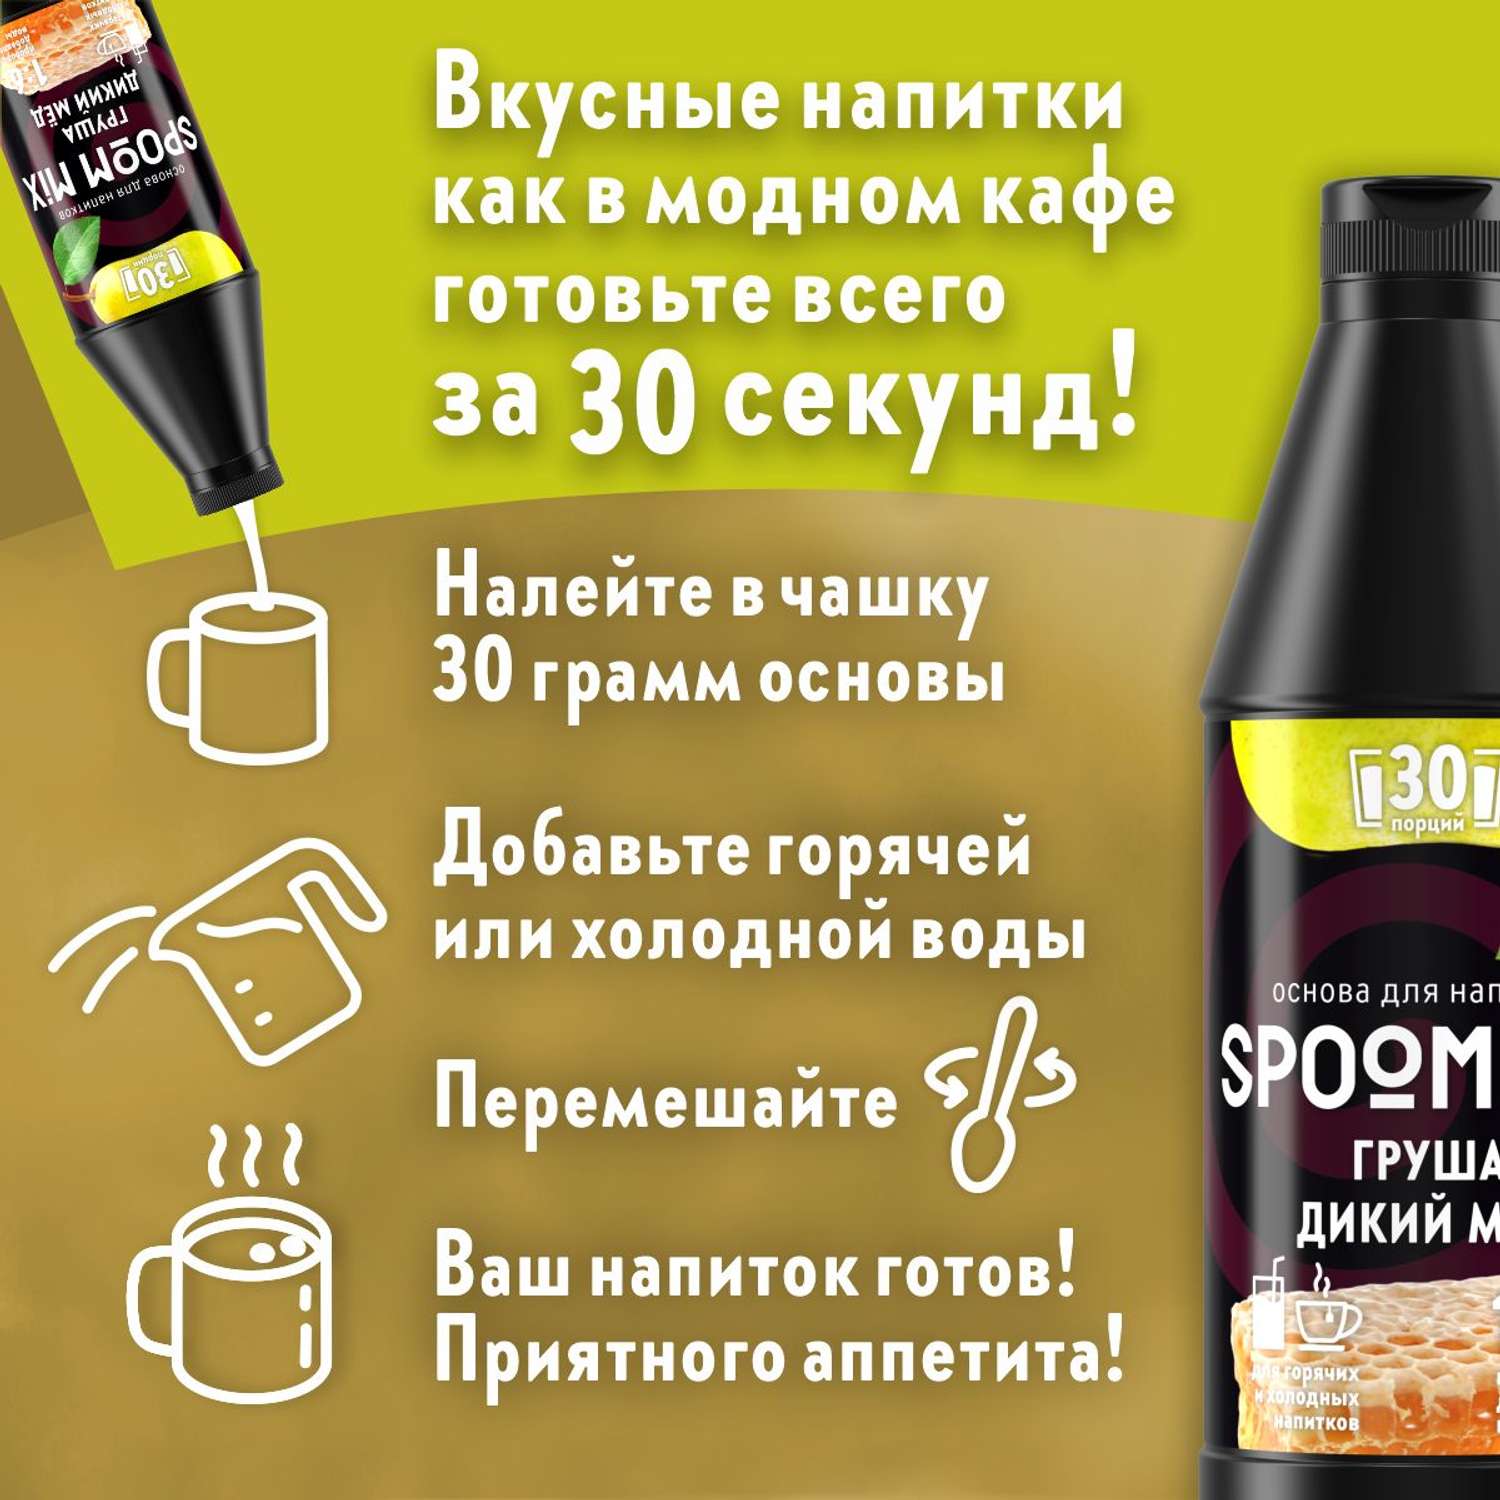 Основа для напитков SPOOM MIX Груша дикий мёд 1 кг - фото 2